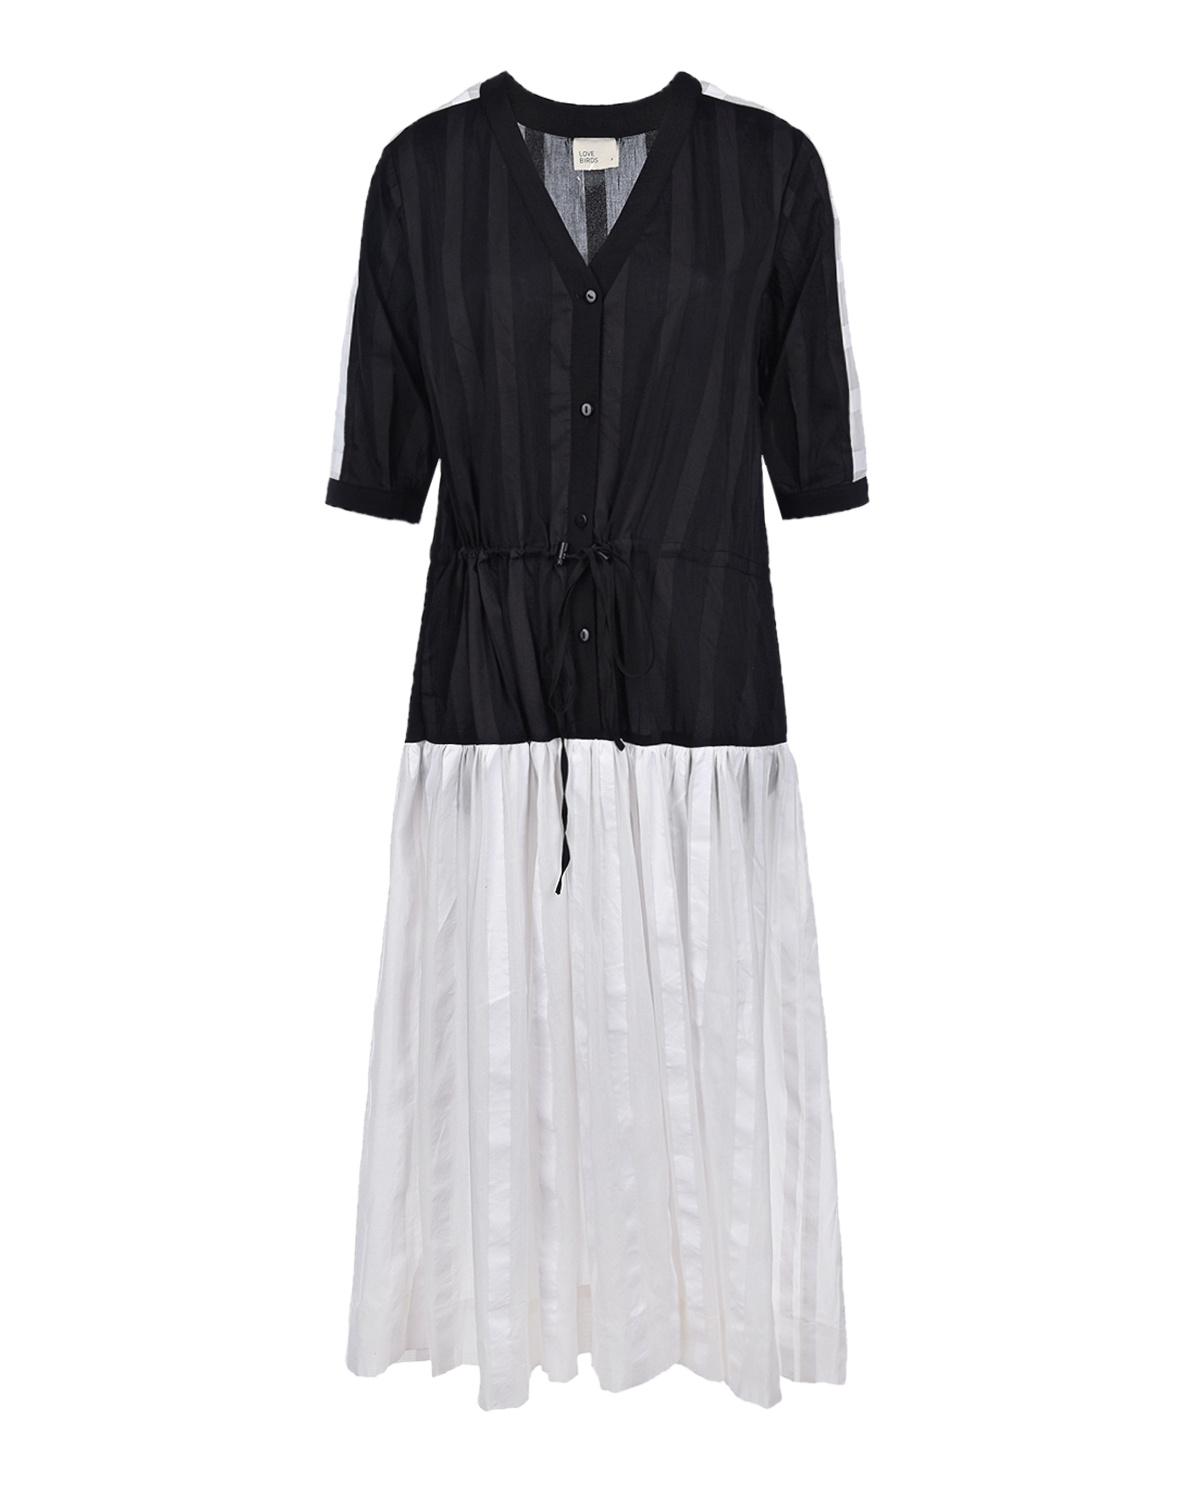 Черно-белое платье LOVE BIRDS, размер 40, цвет черный - фото 1